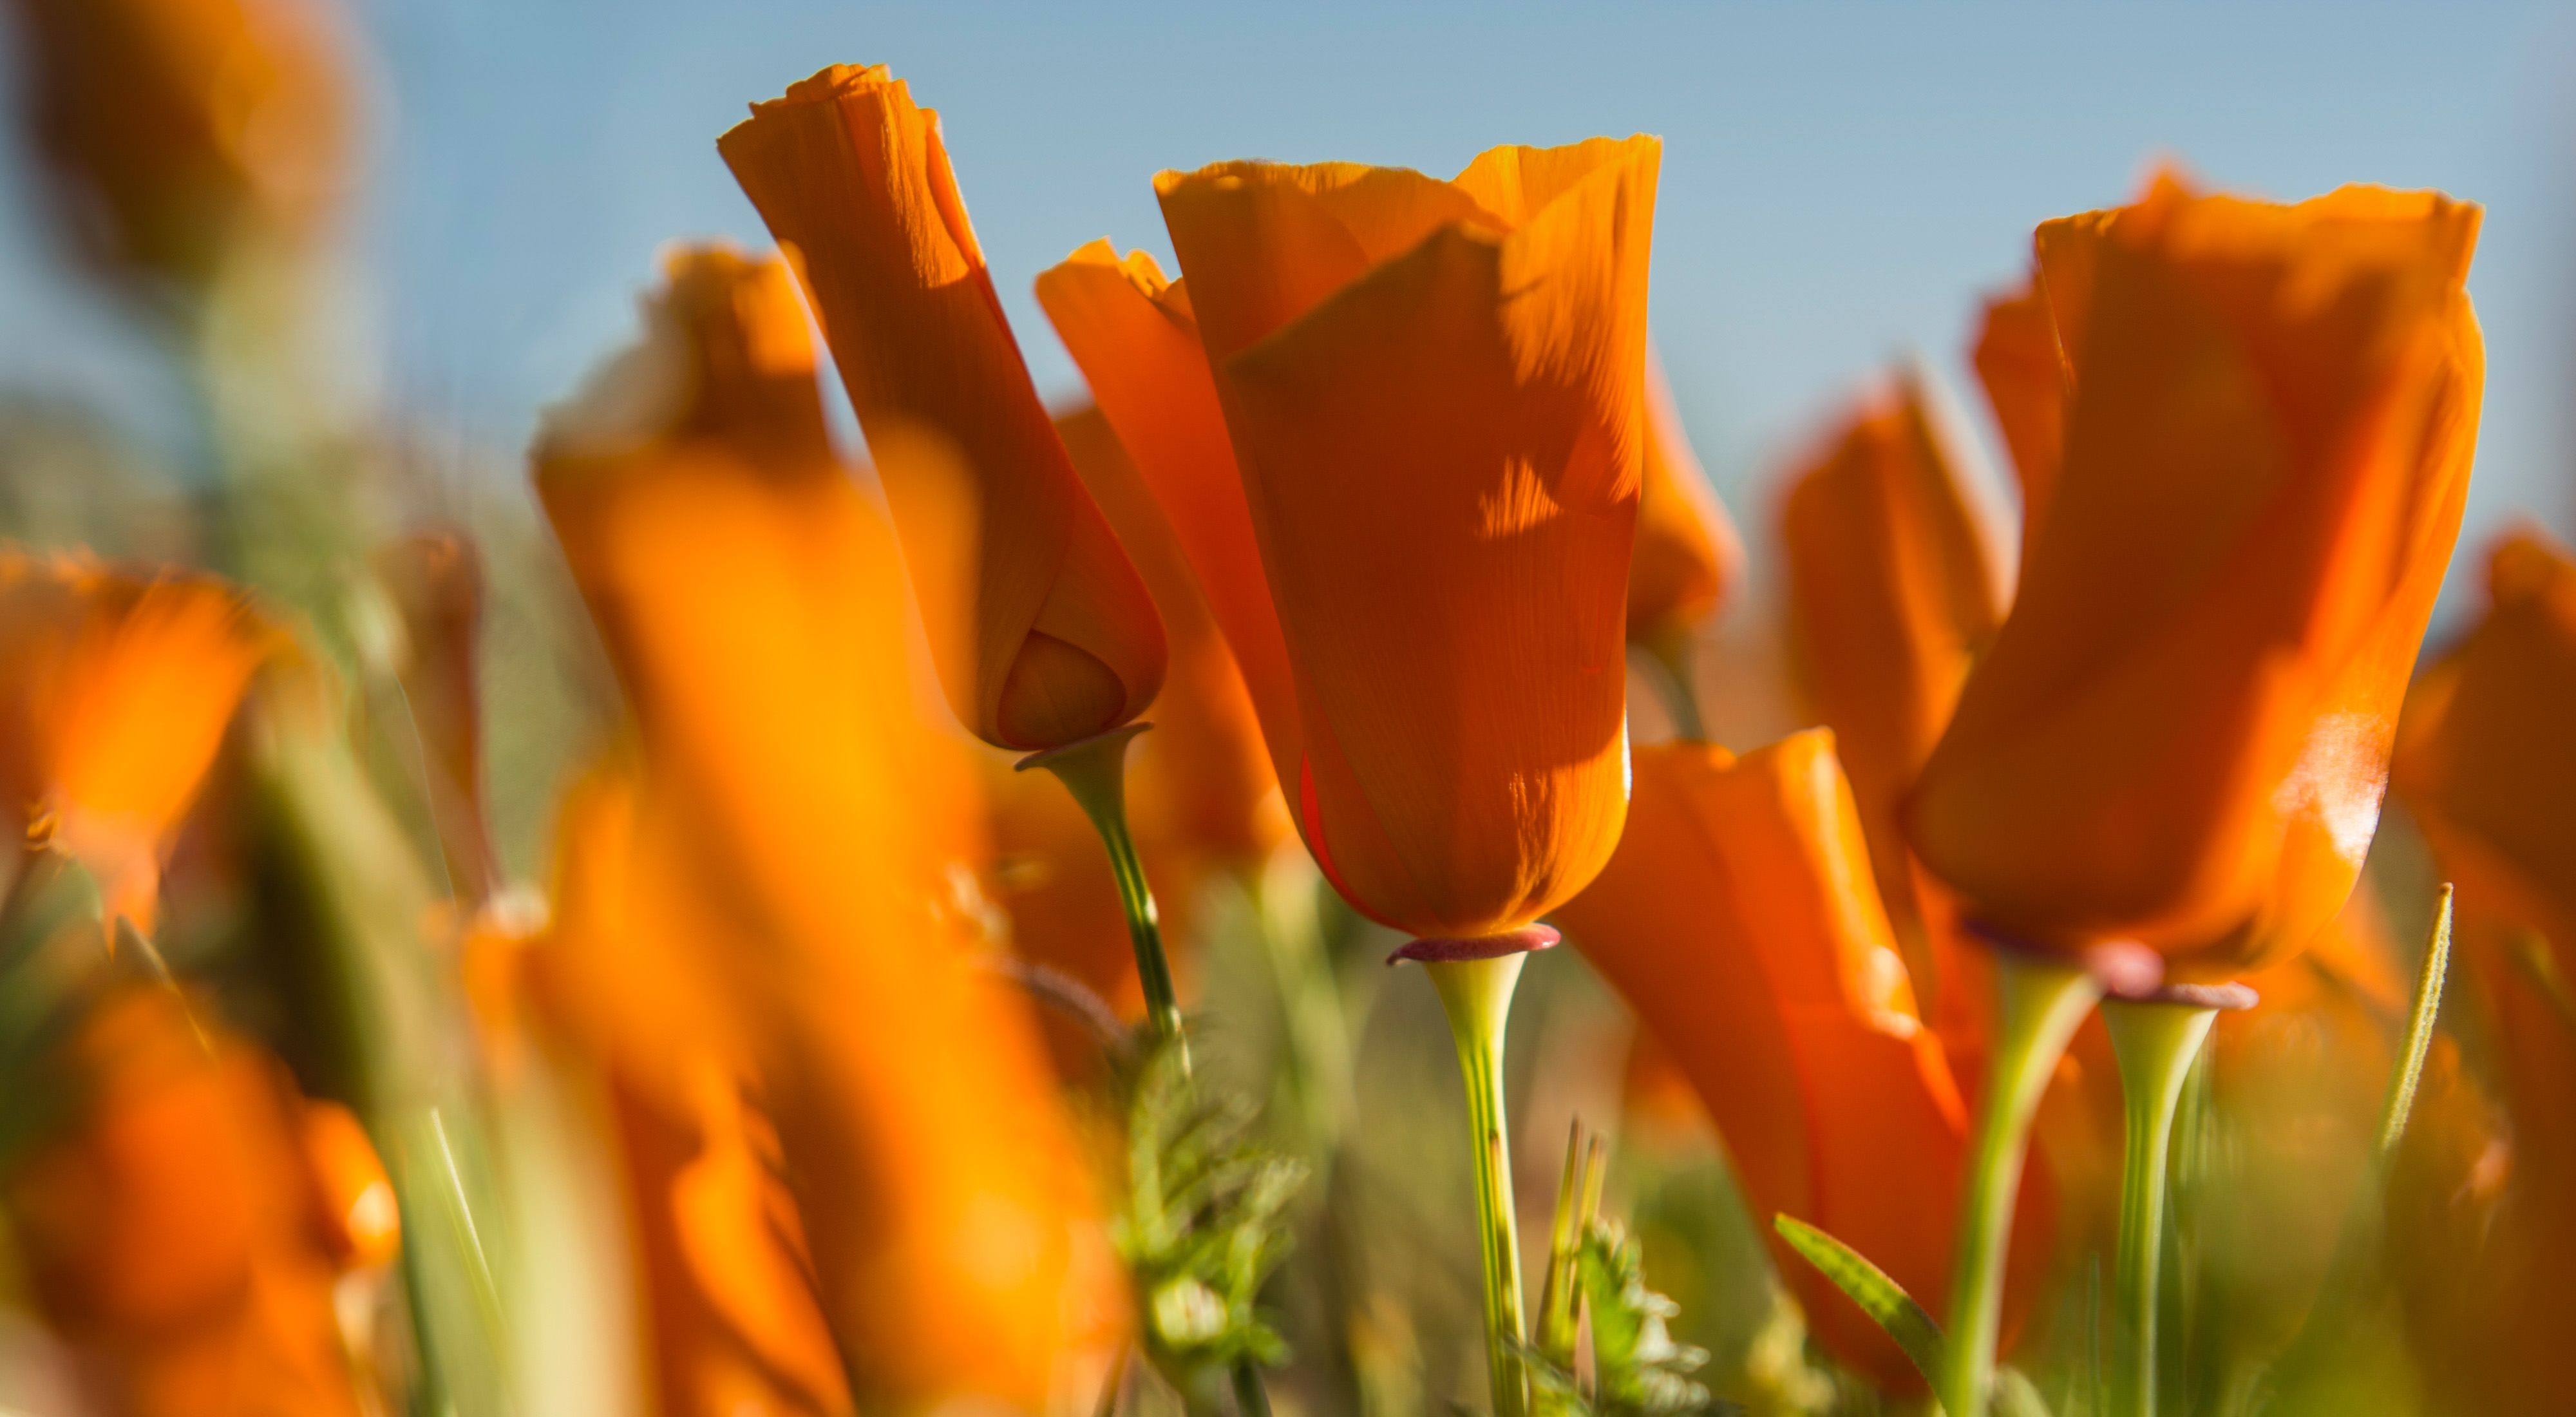 The California Poppy Preserve in Palmdale, CA.